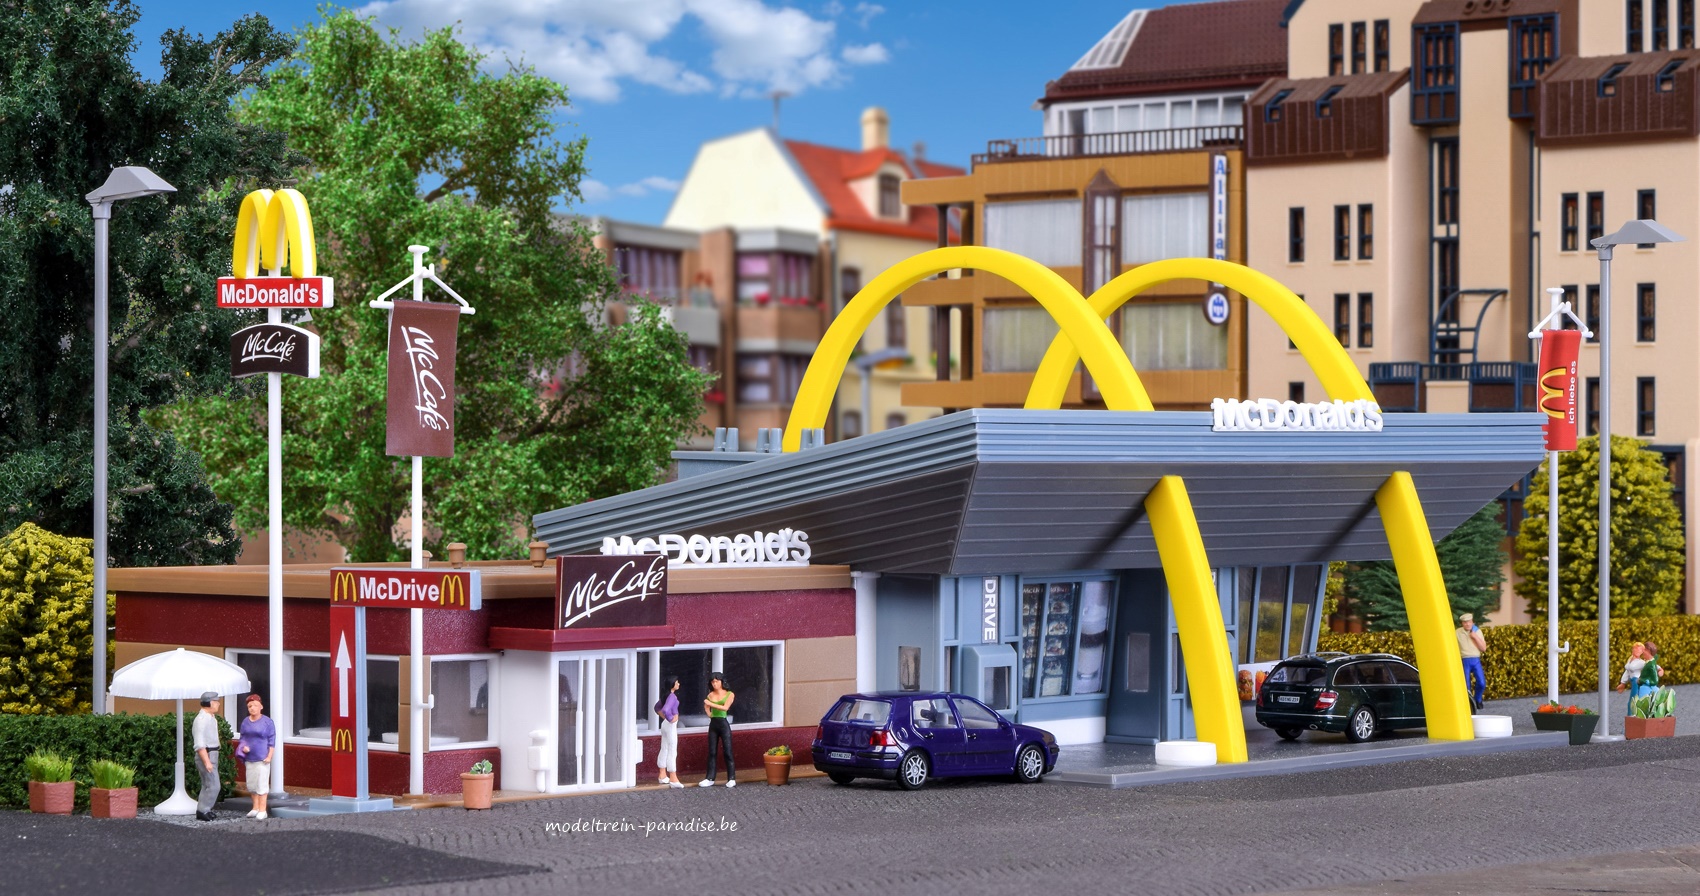 43635 ... McDonald's Restaurant met McCafe